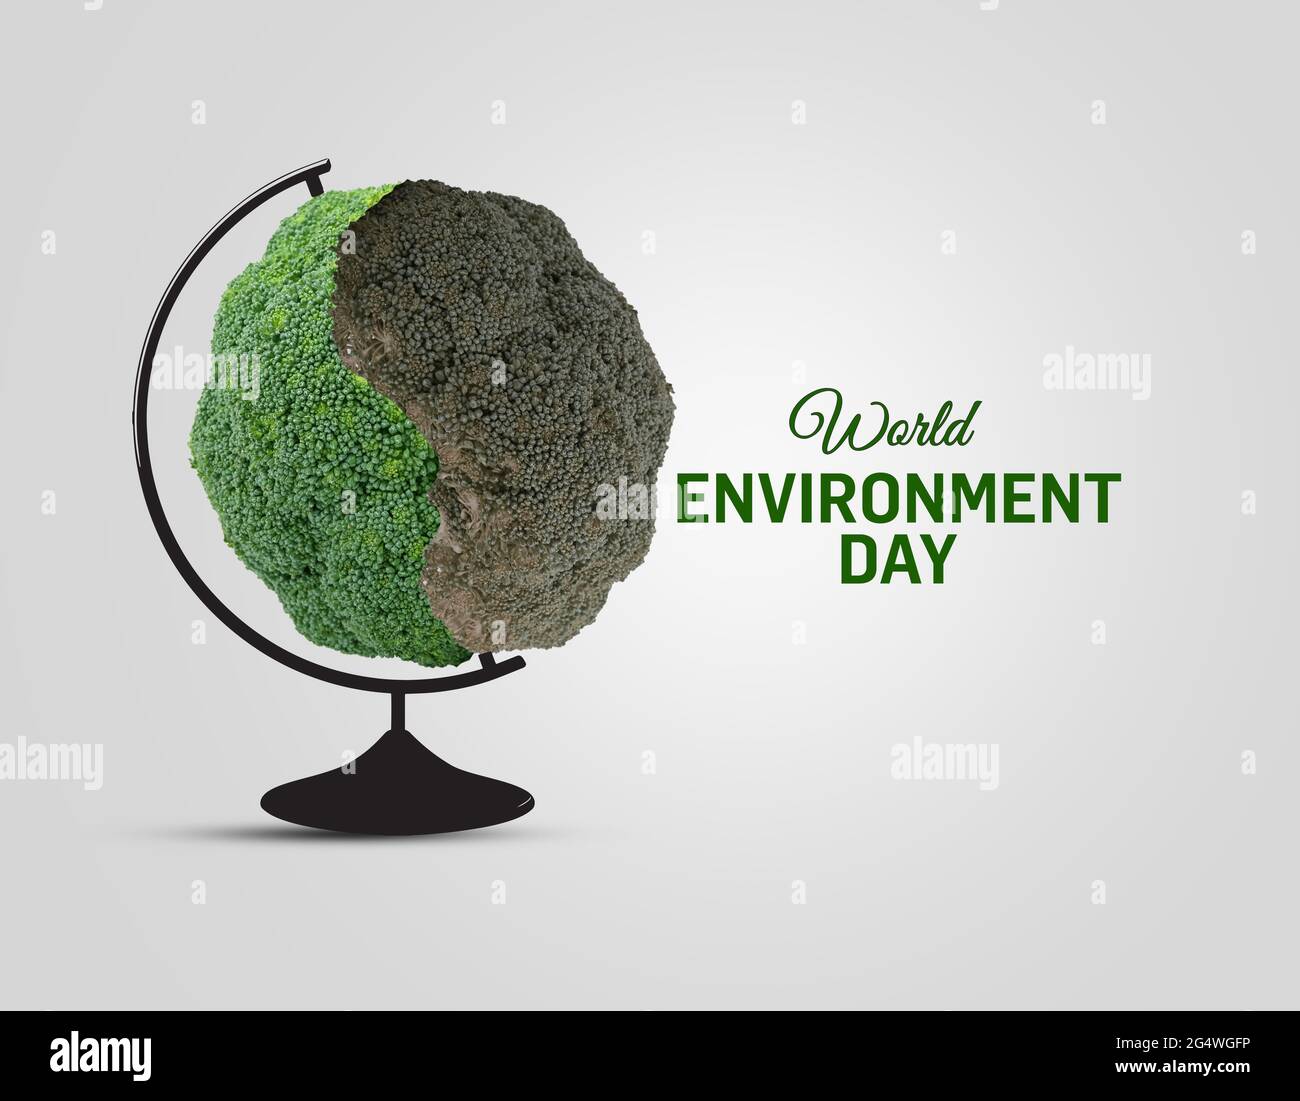 D Grüne Weltkarte - Wald- und Gebirgsform der Weltkarte isoliert auf weißem Hintergrund. Weltkarte Green Planet Earth Day oder Environment Day Konzept. Stockfoto